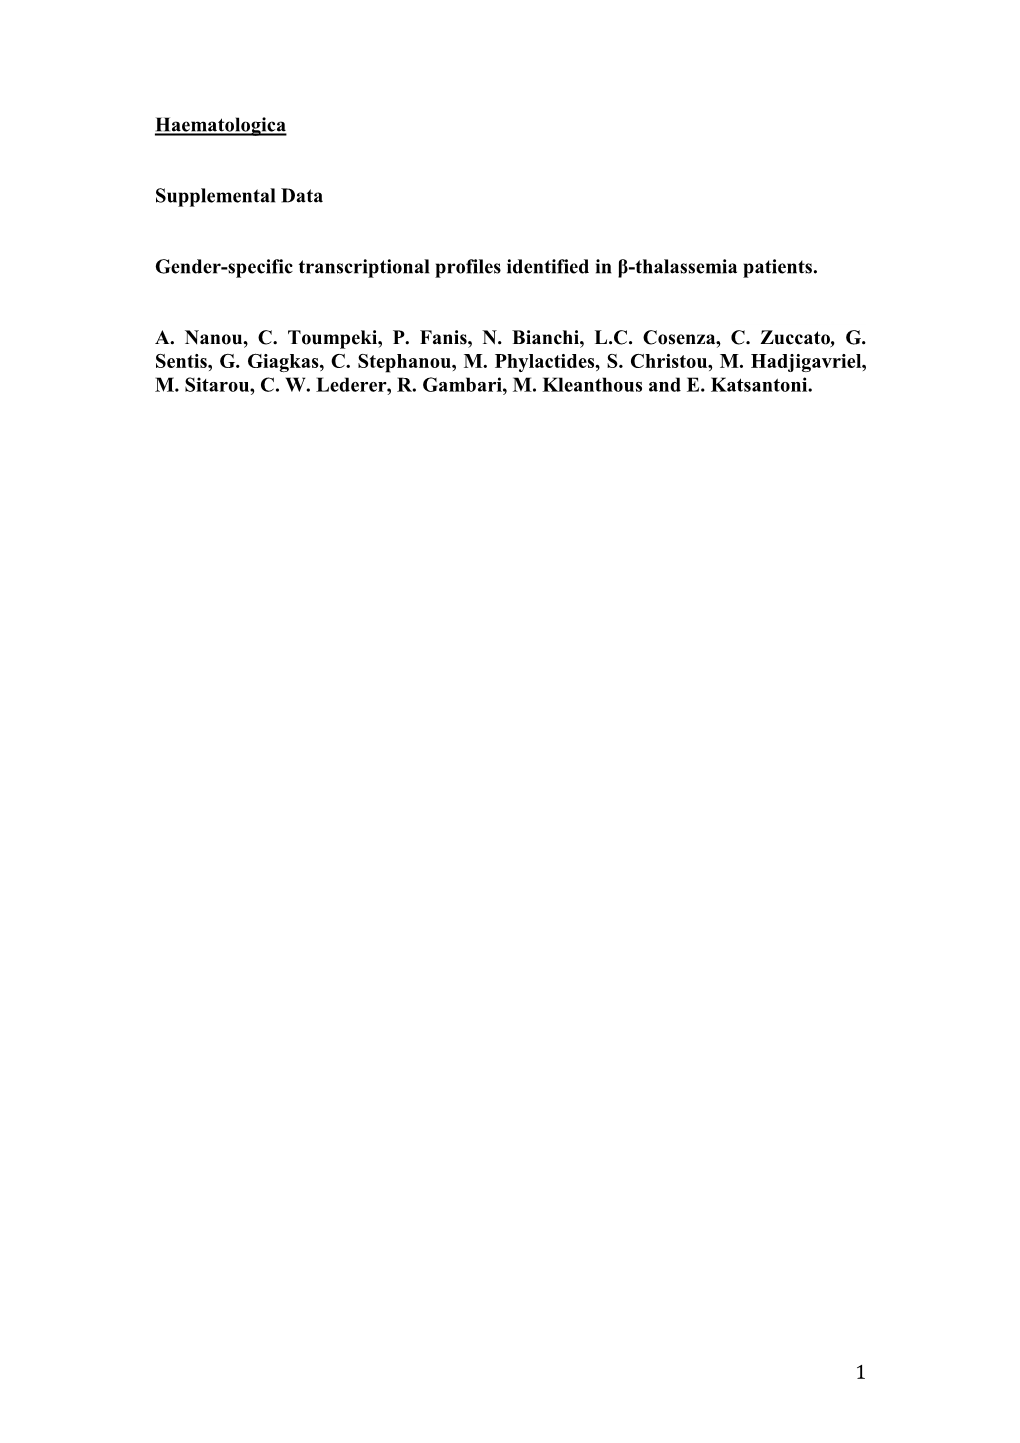 1 Haematologica Supplemental Data Gender-Specific Transcriptional